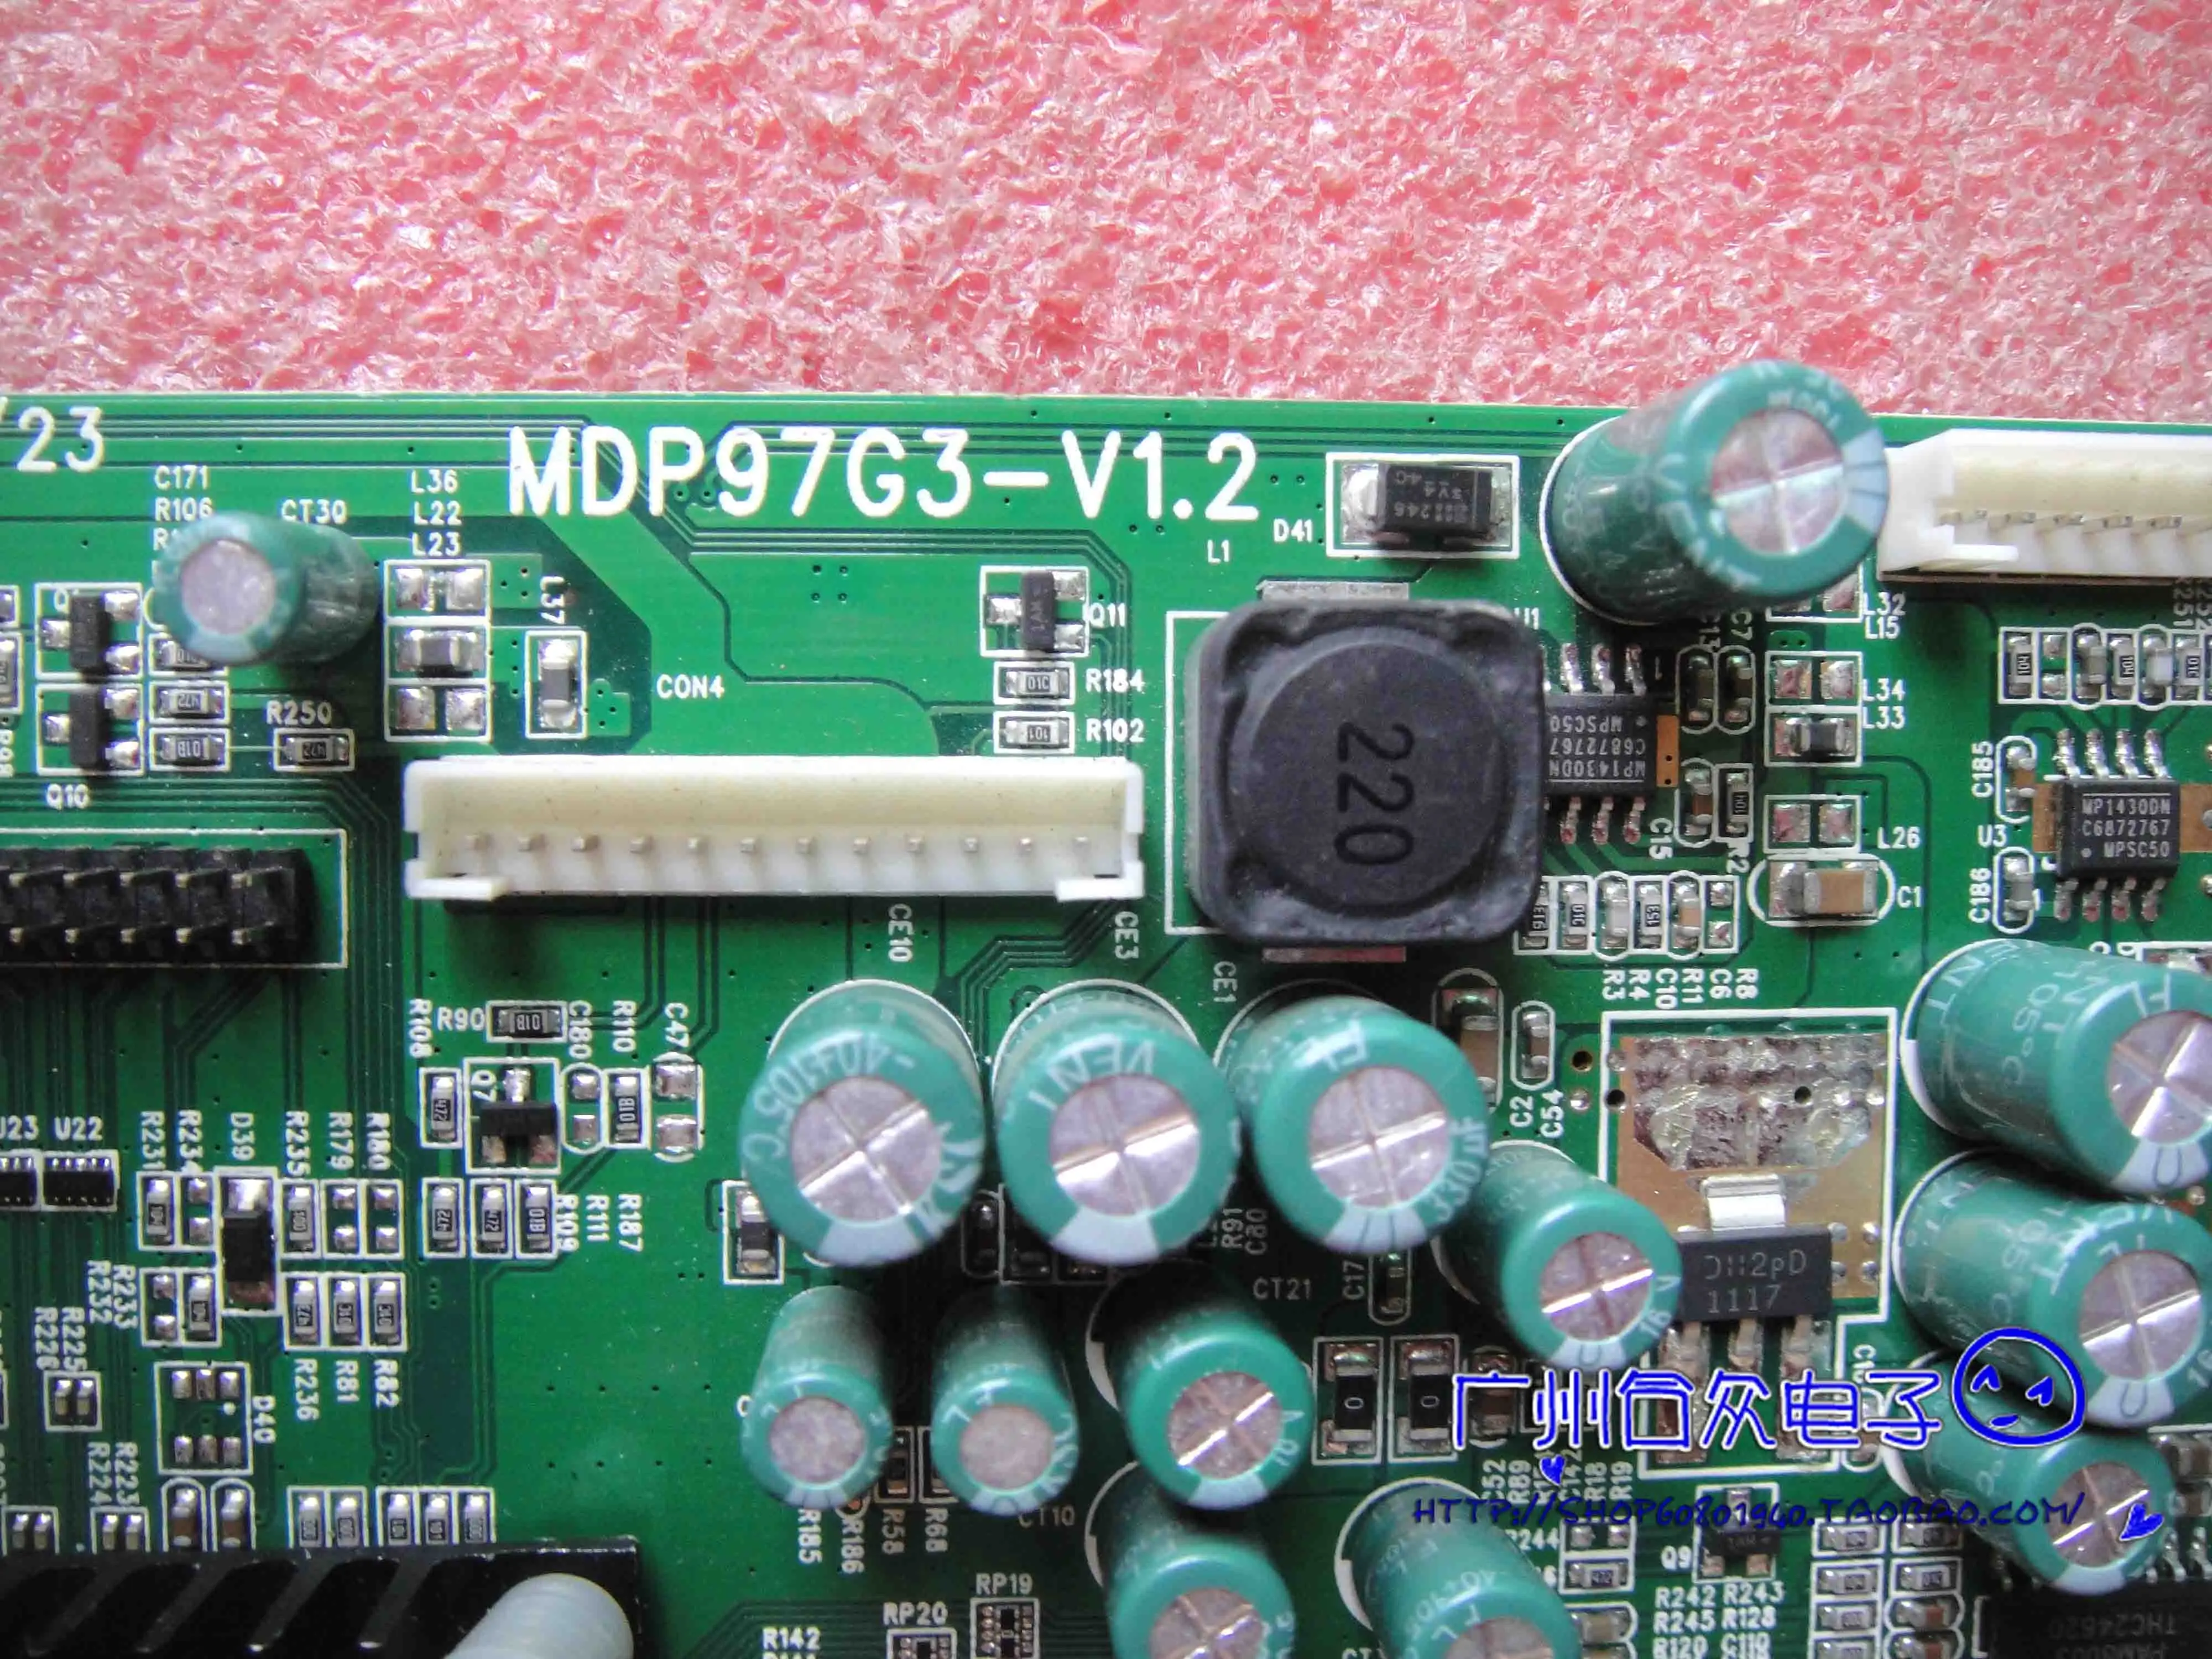 T7000+ Controlador de la Junta de 2723S Placa base MDP97G3-V1.2 con LG LM270WQ1 SDF1 0